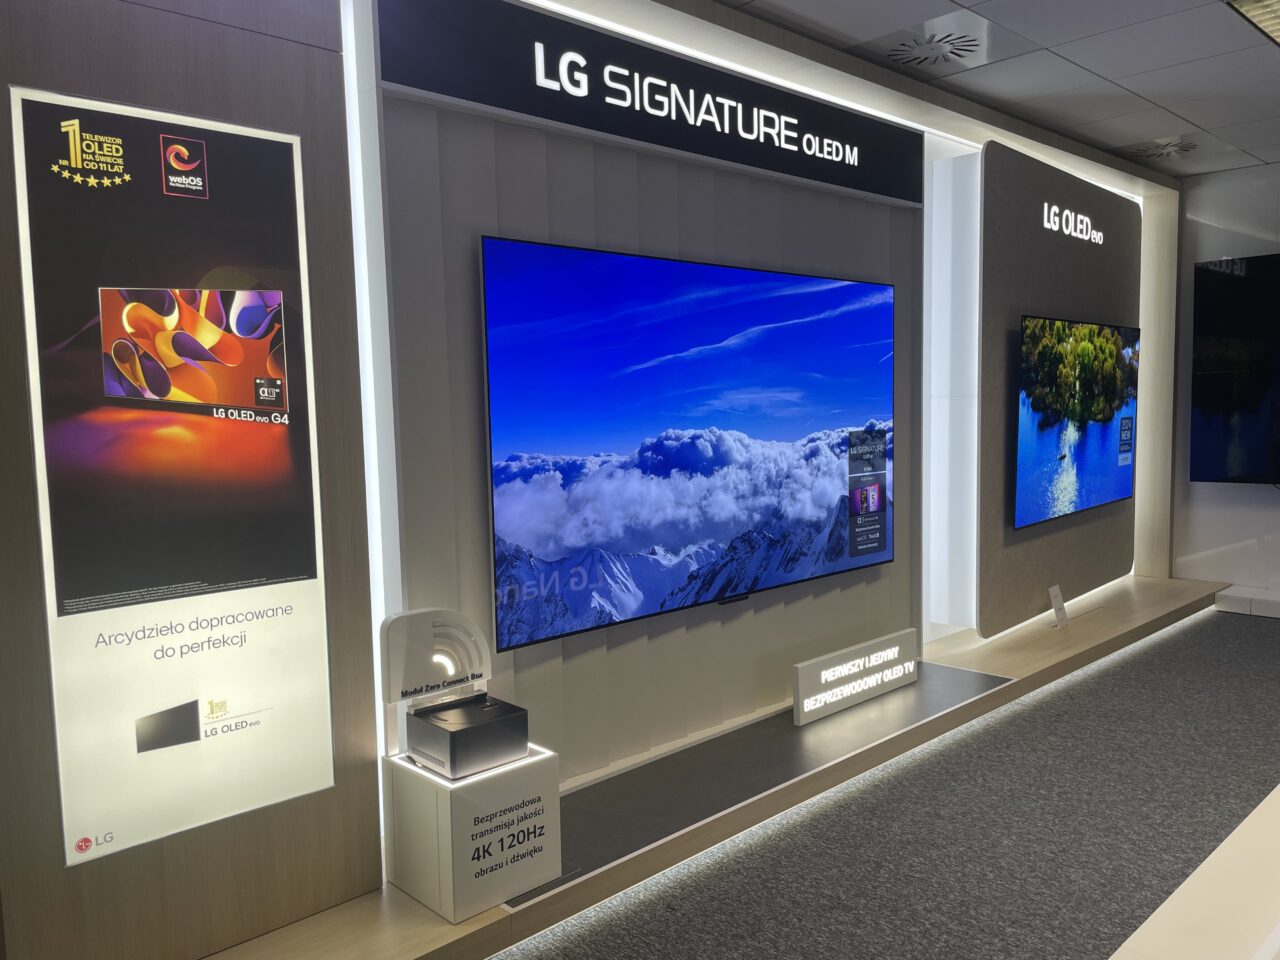 Stoisko LG z trzema telewizorami OLED prezentującymi różne obrazy oraz opisami funkcji i nagród.